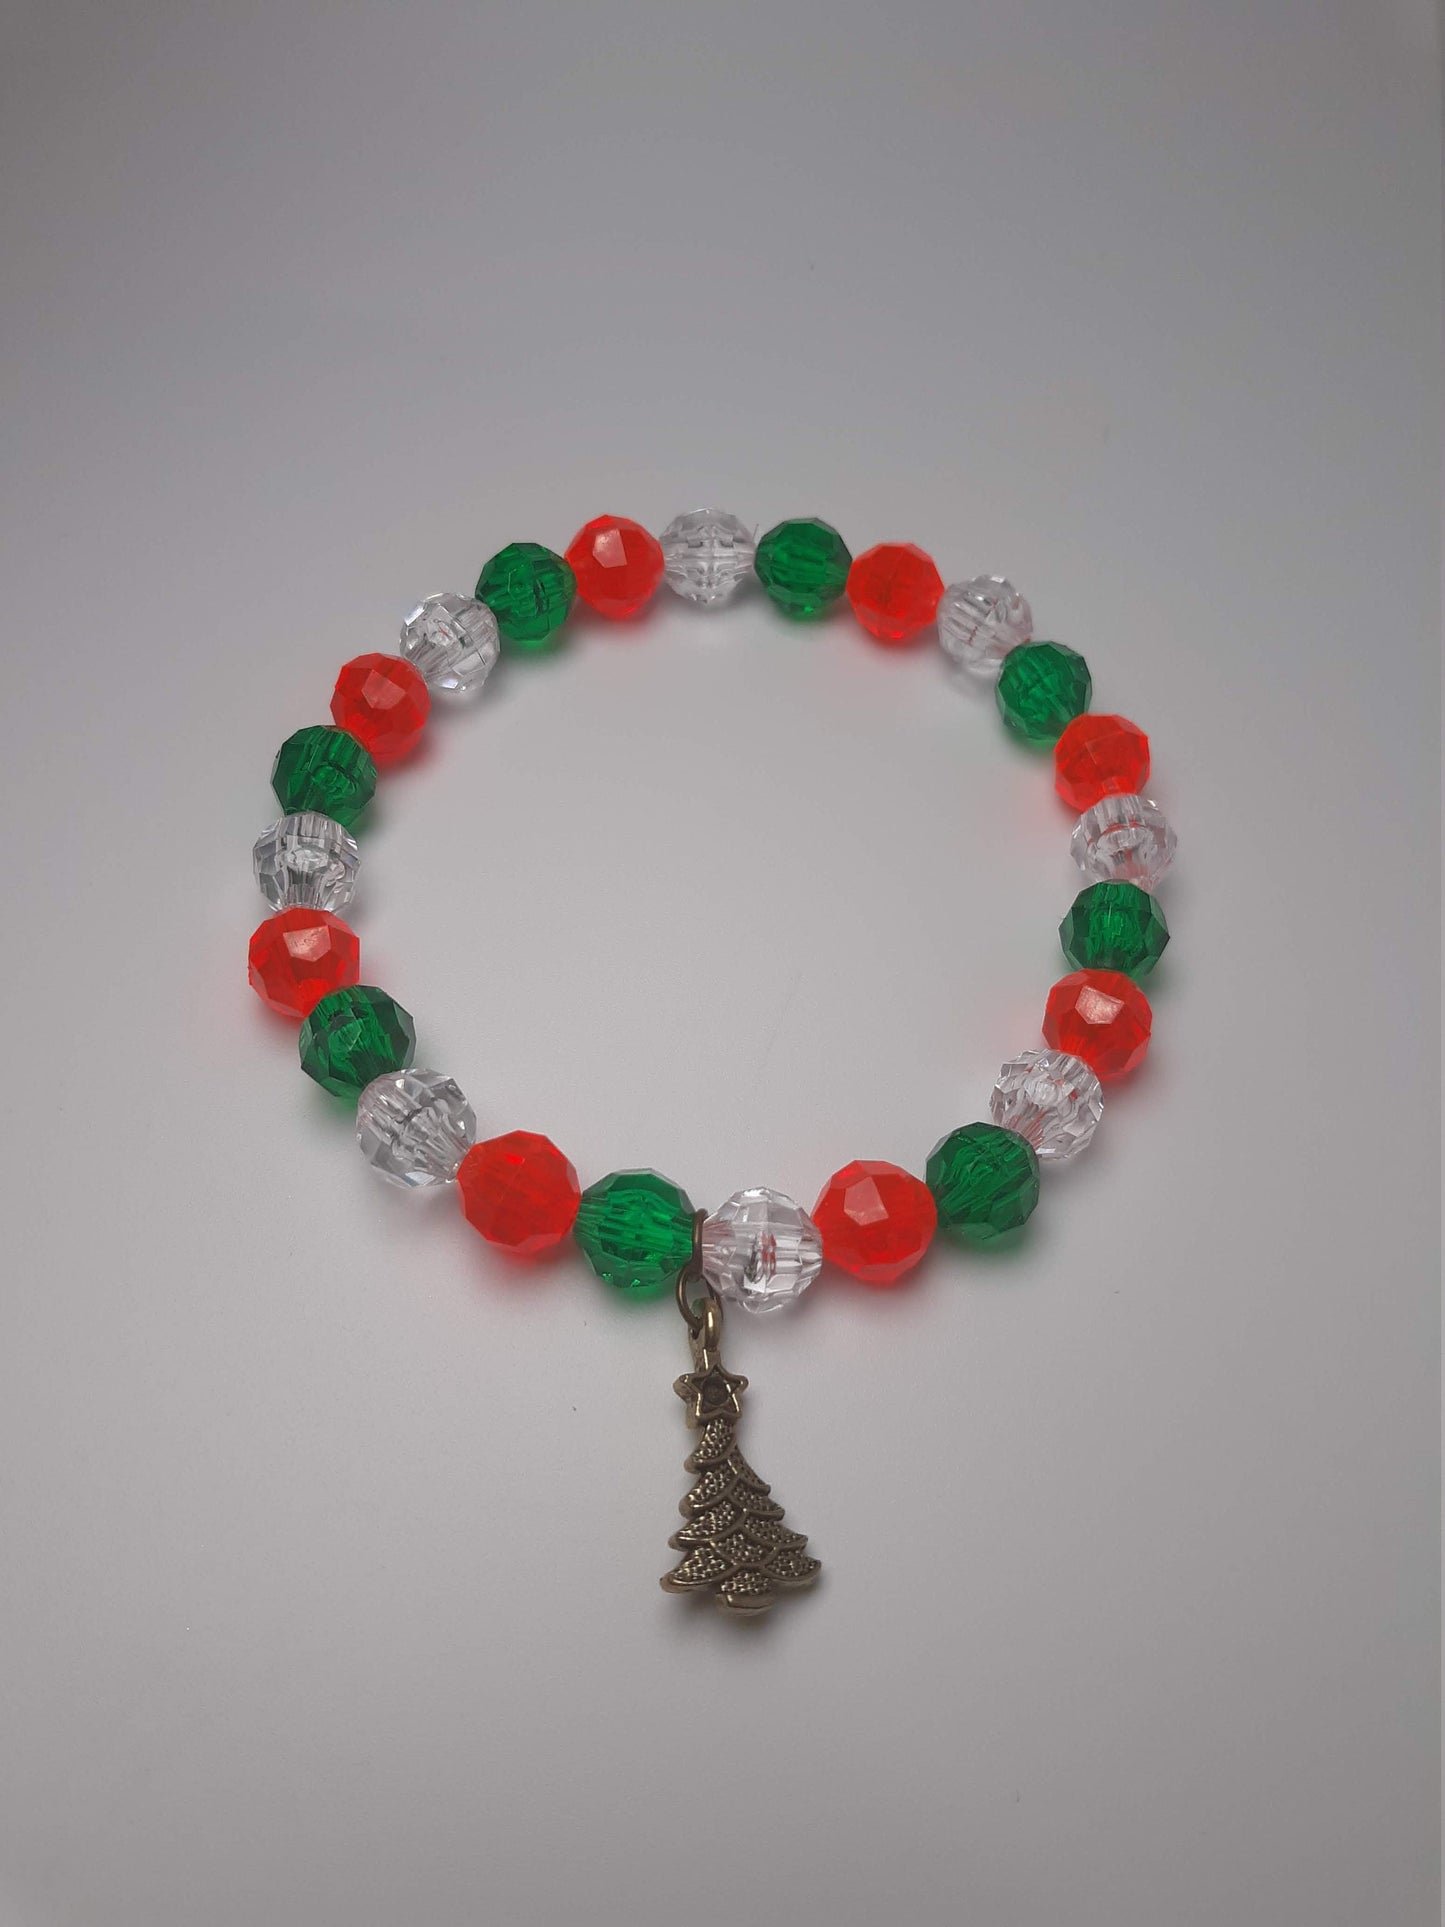 Christmas Tree Patterned Bracelets